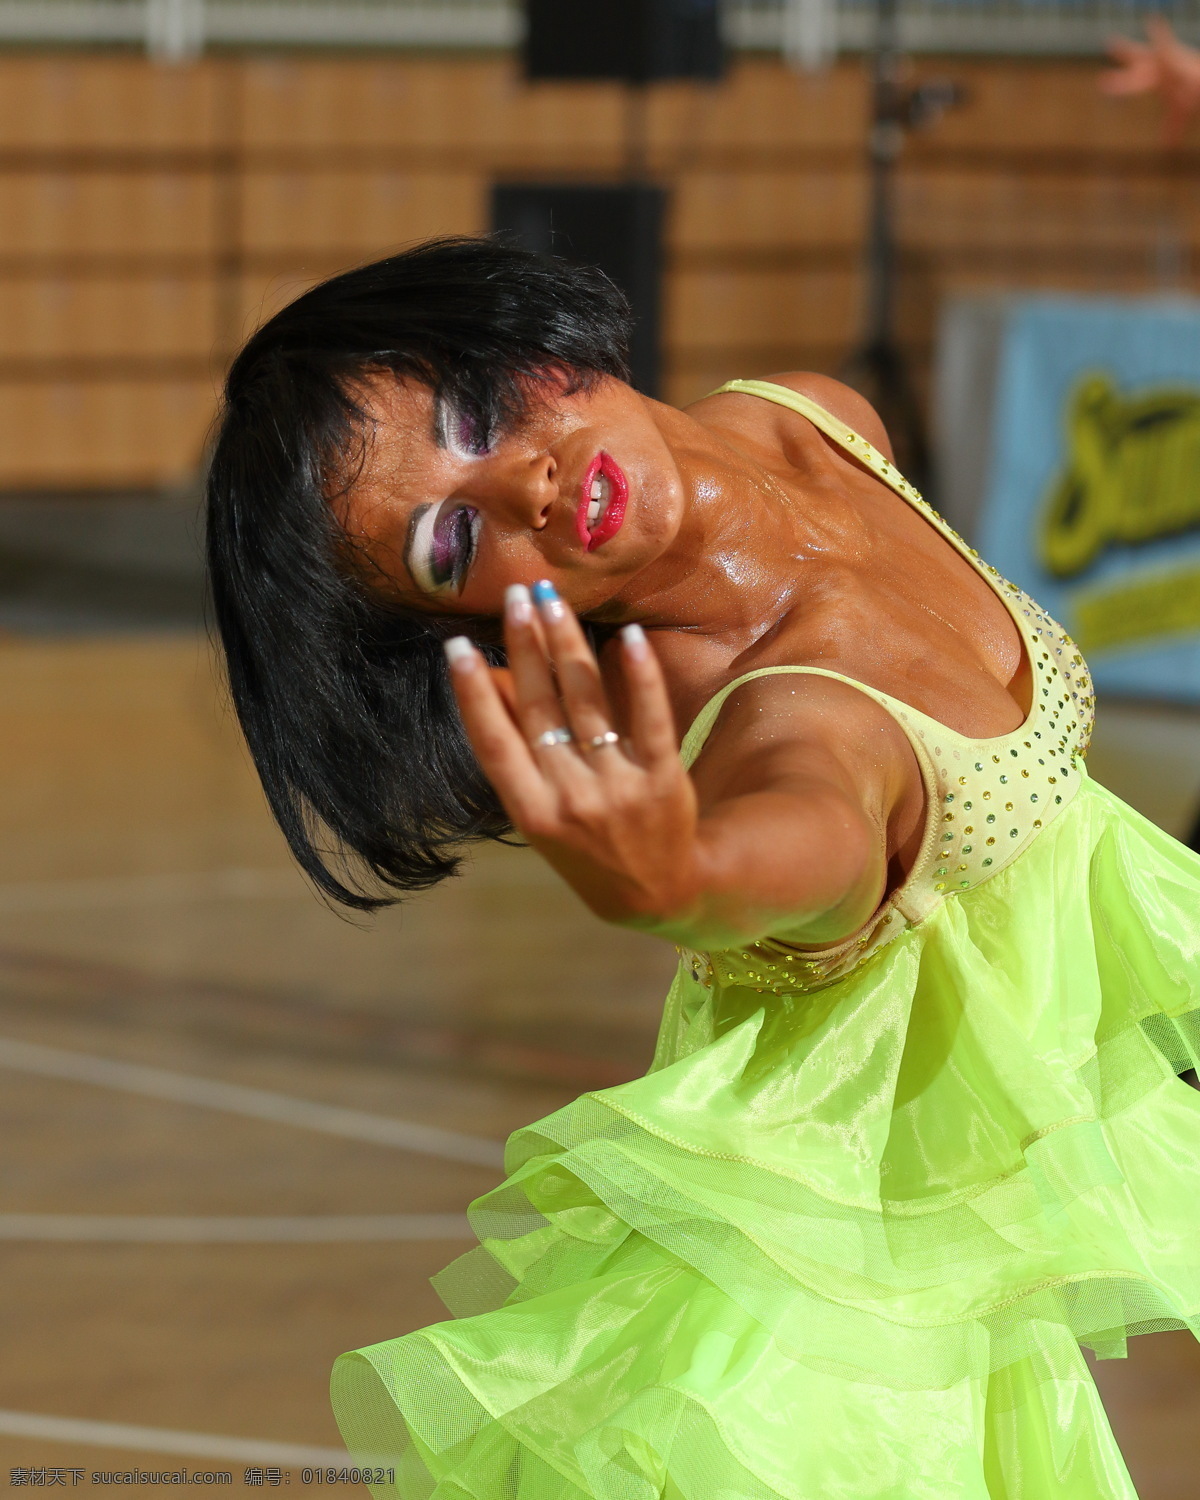 舞蹈 拉丁舞 恰恰 桑巴 伦巴 牛仔 斗牛 美女 模特 文化艺术 体育运动